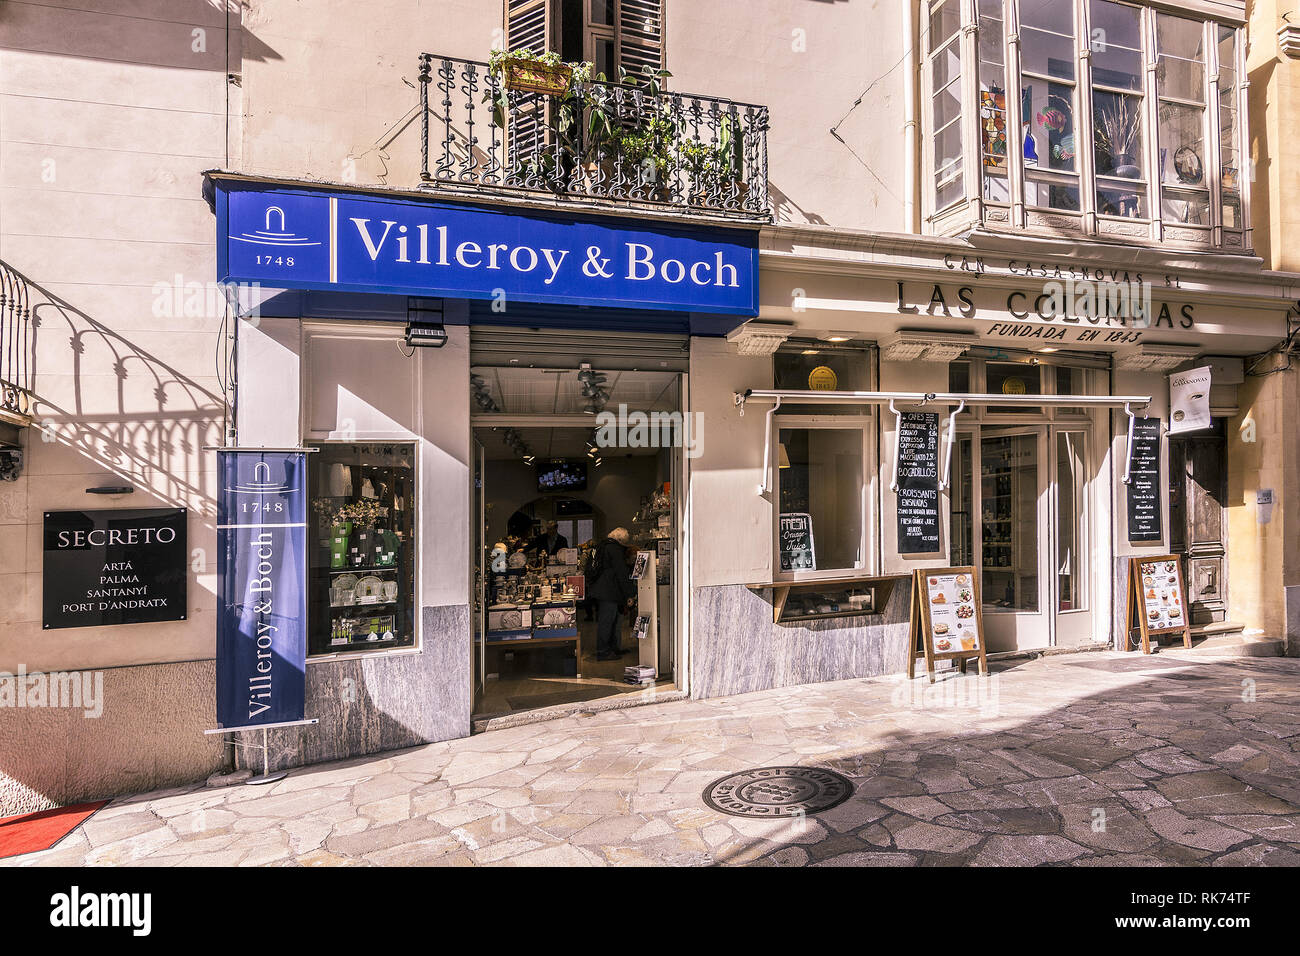 PALMA DE MAJORQUE, ESPAGNE - Février 9, 2019 : Villeroy & Boch storefron dans une rue calme dans la Vieille Ville le 9 février 2019 à Palma de Majorque, Espagne. Banque D'Images